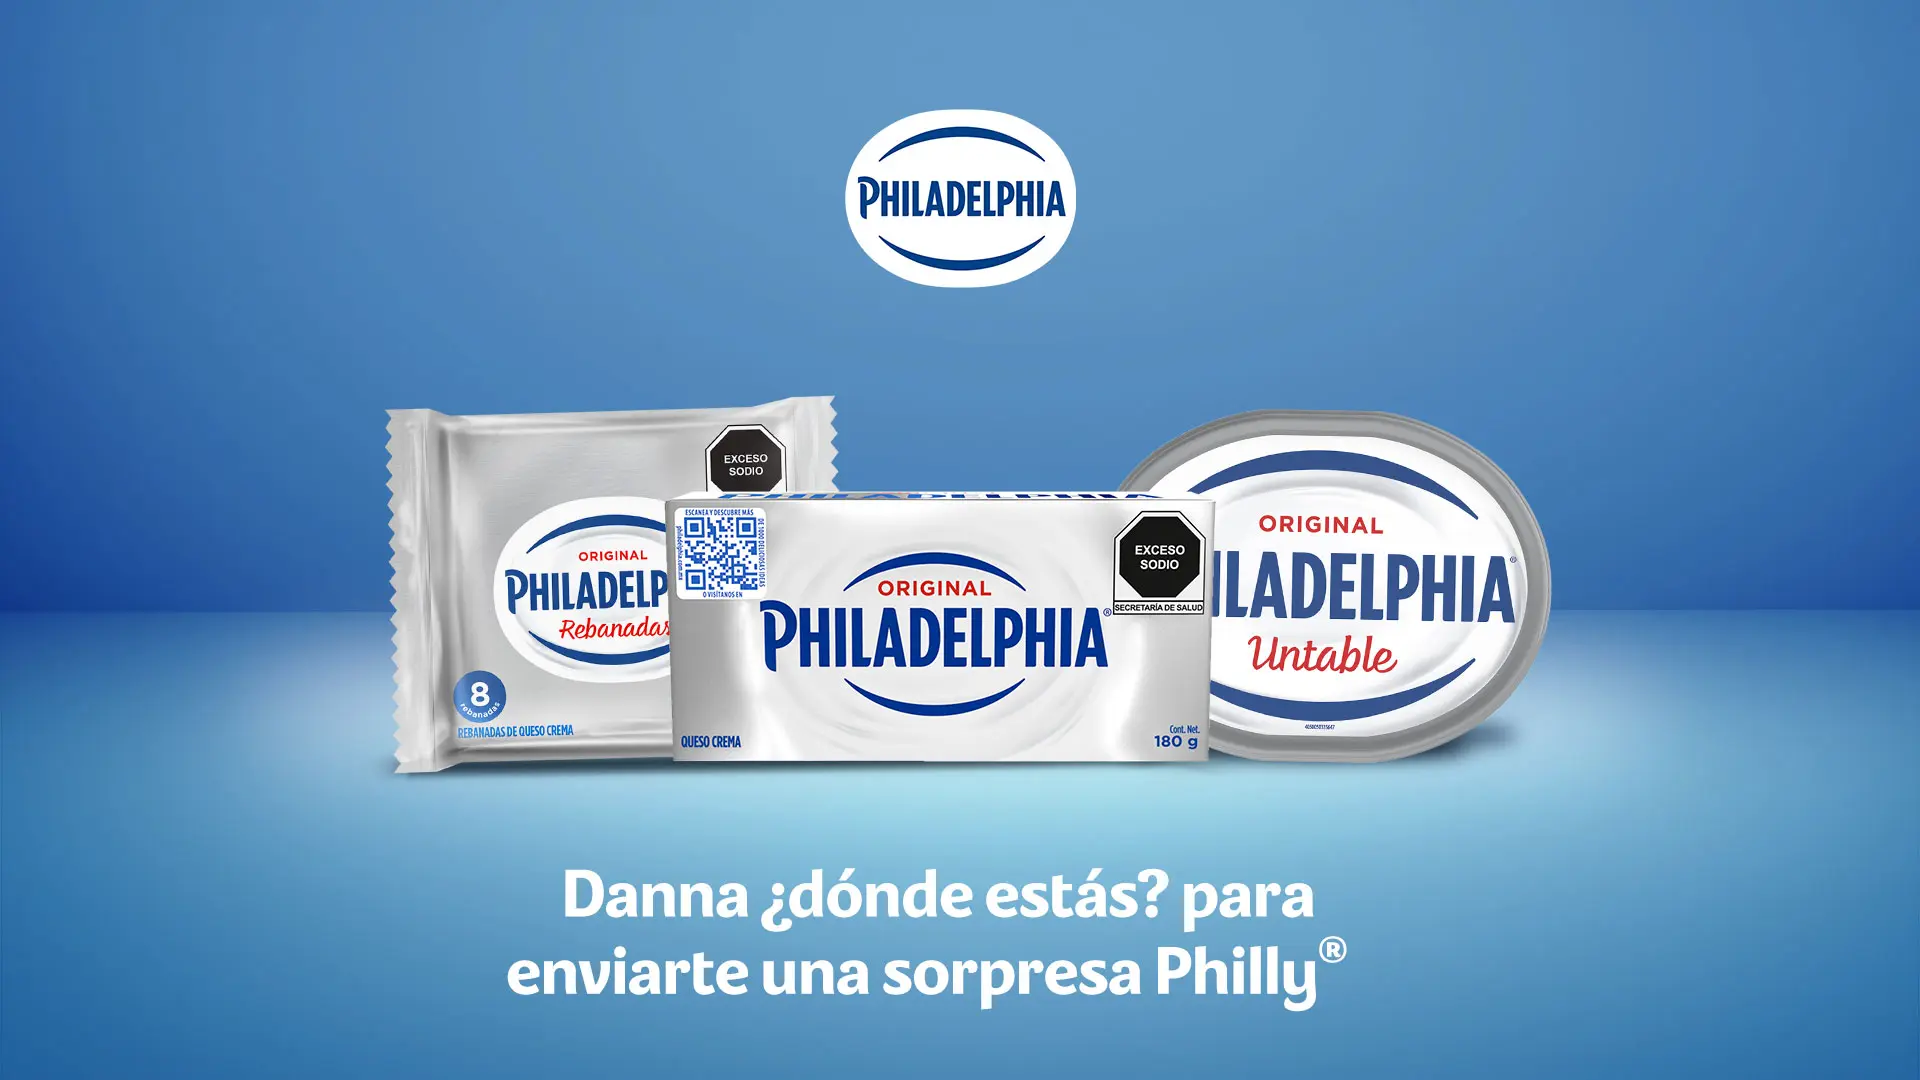 anuncio de queso philadelphia - Quién es el proveedor de queso Philadelphia